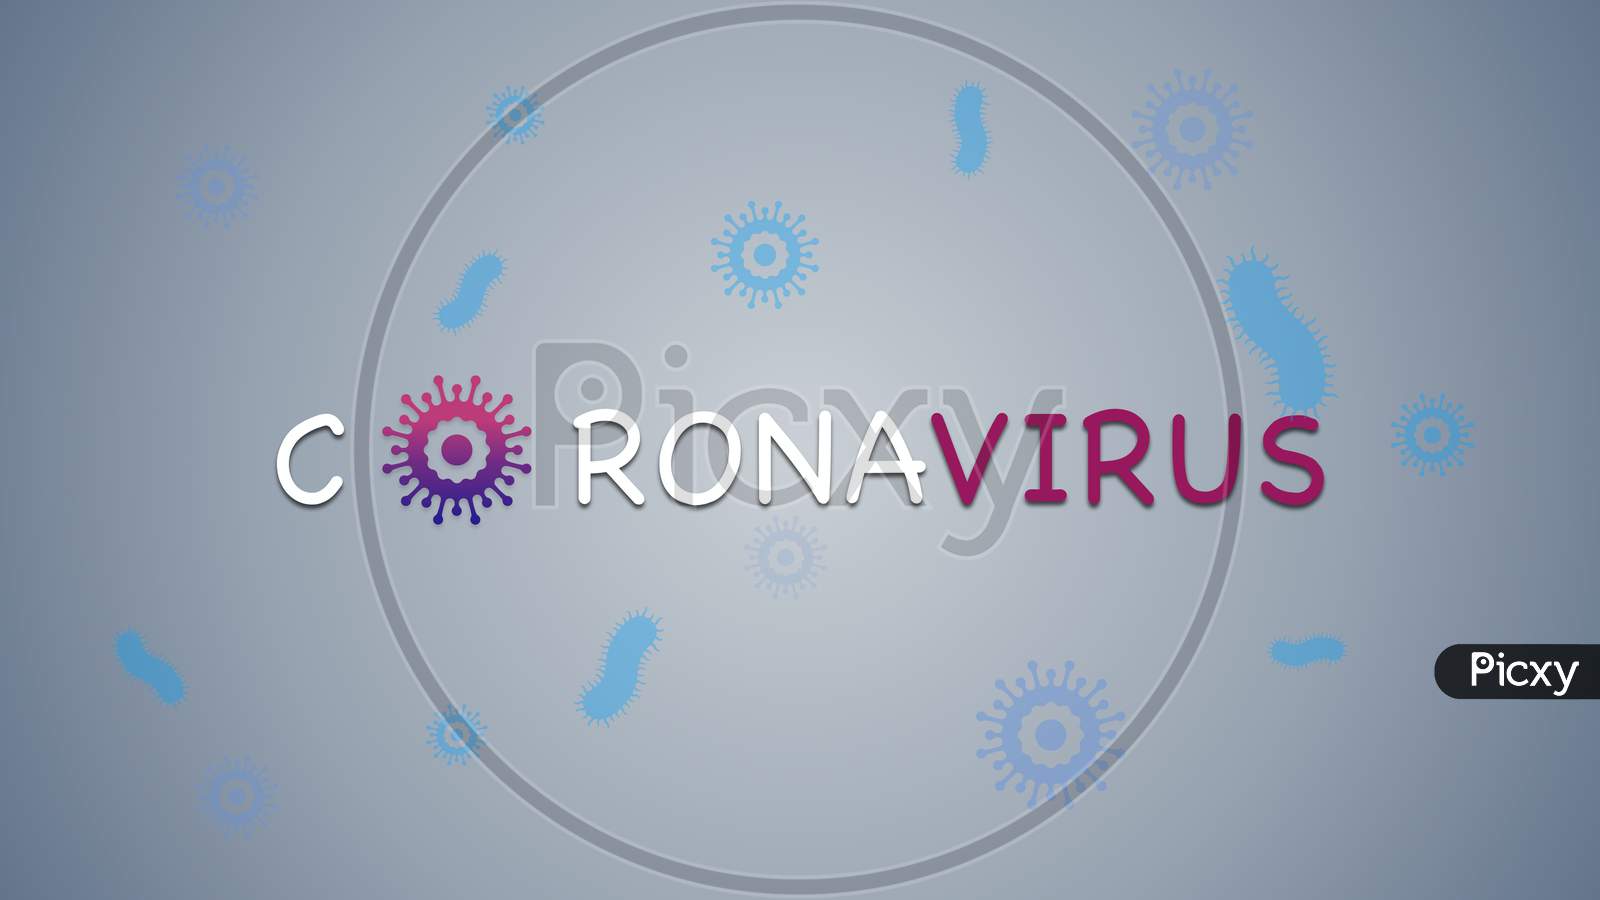 Coronavirus Banner For Awareness & Alert Against Disease Spread, Symptoms Or Precautions.